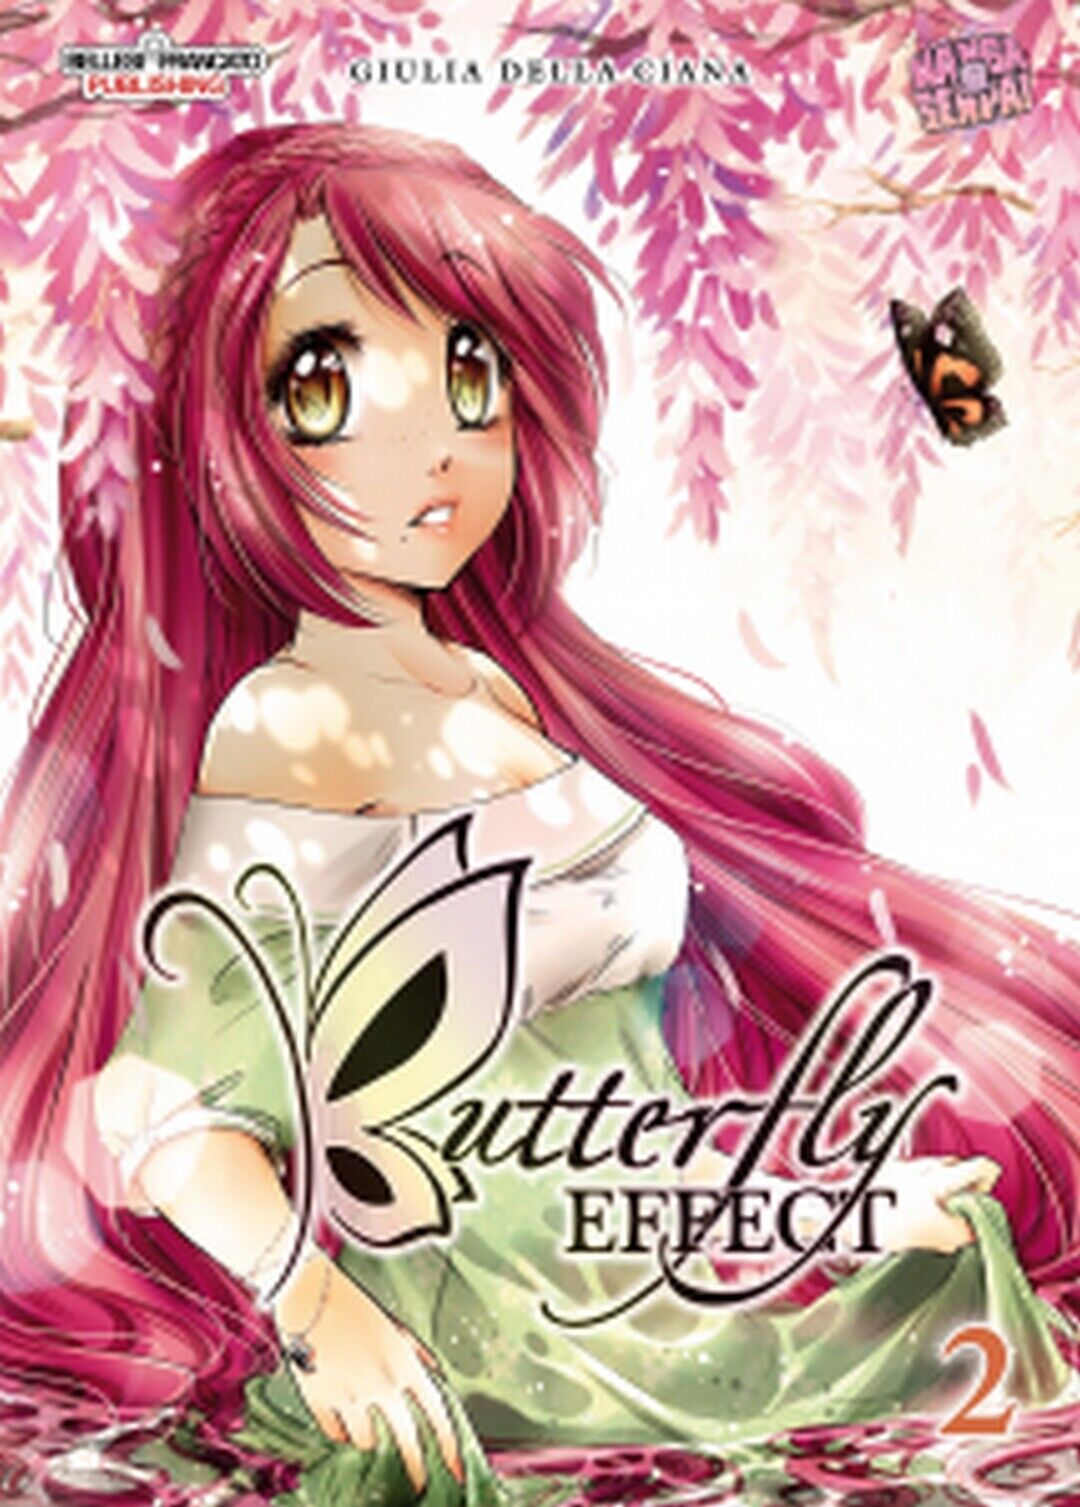 BUTTERFLY EFFECT volume 2  di Giulia Della Ciana (autore),  2019,  Manga Senpai